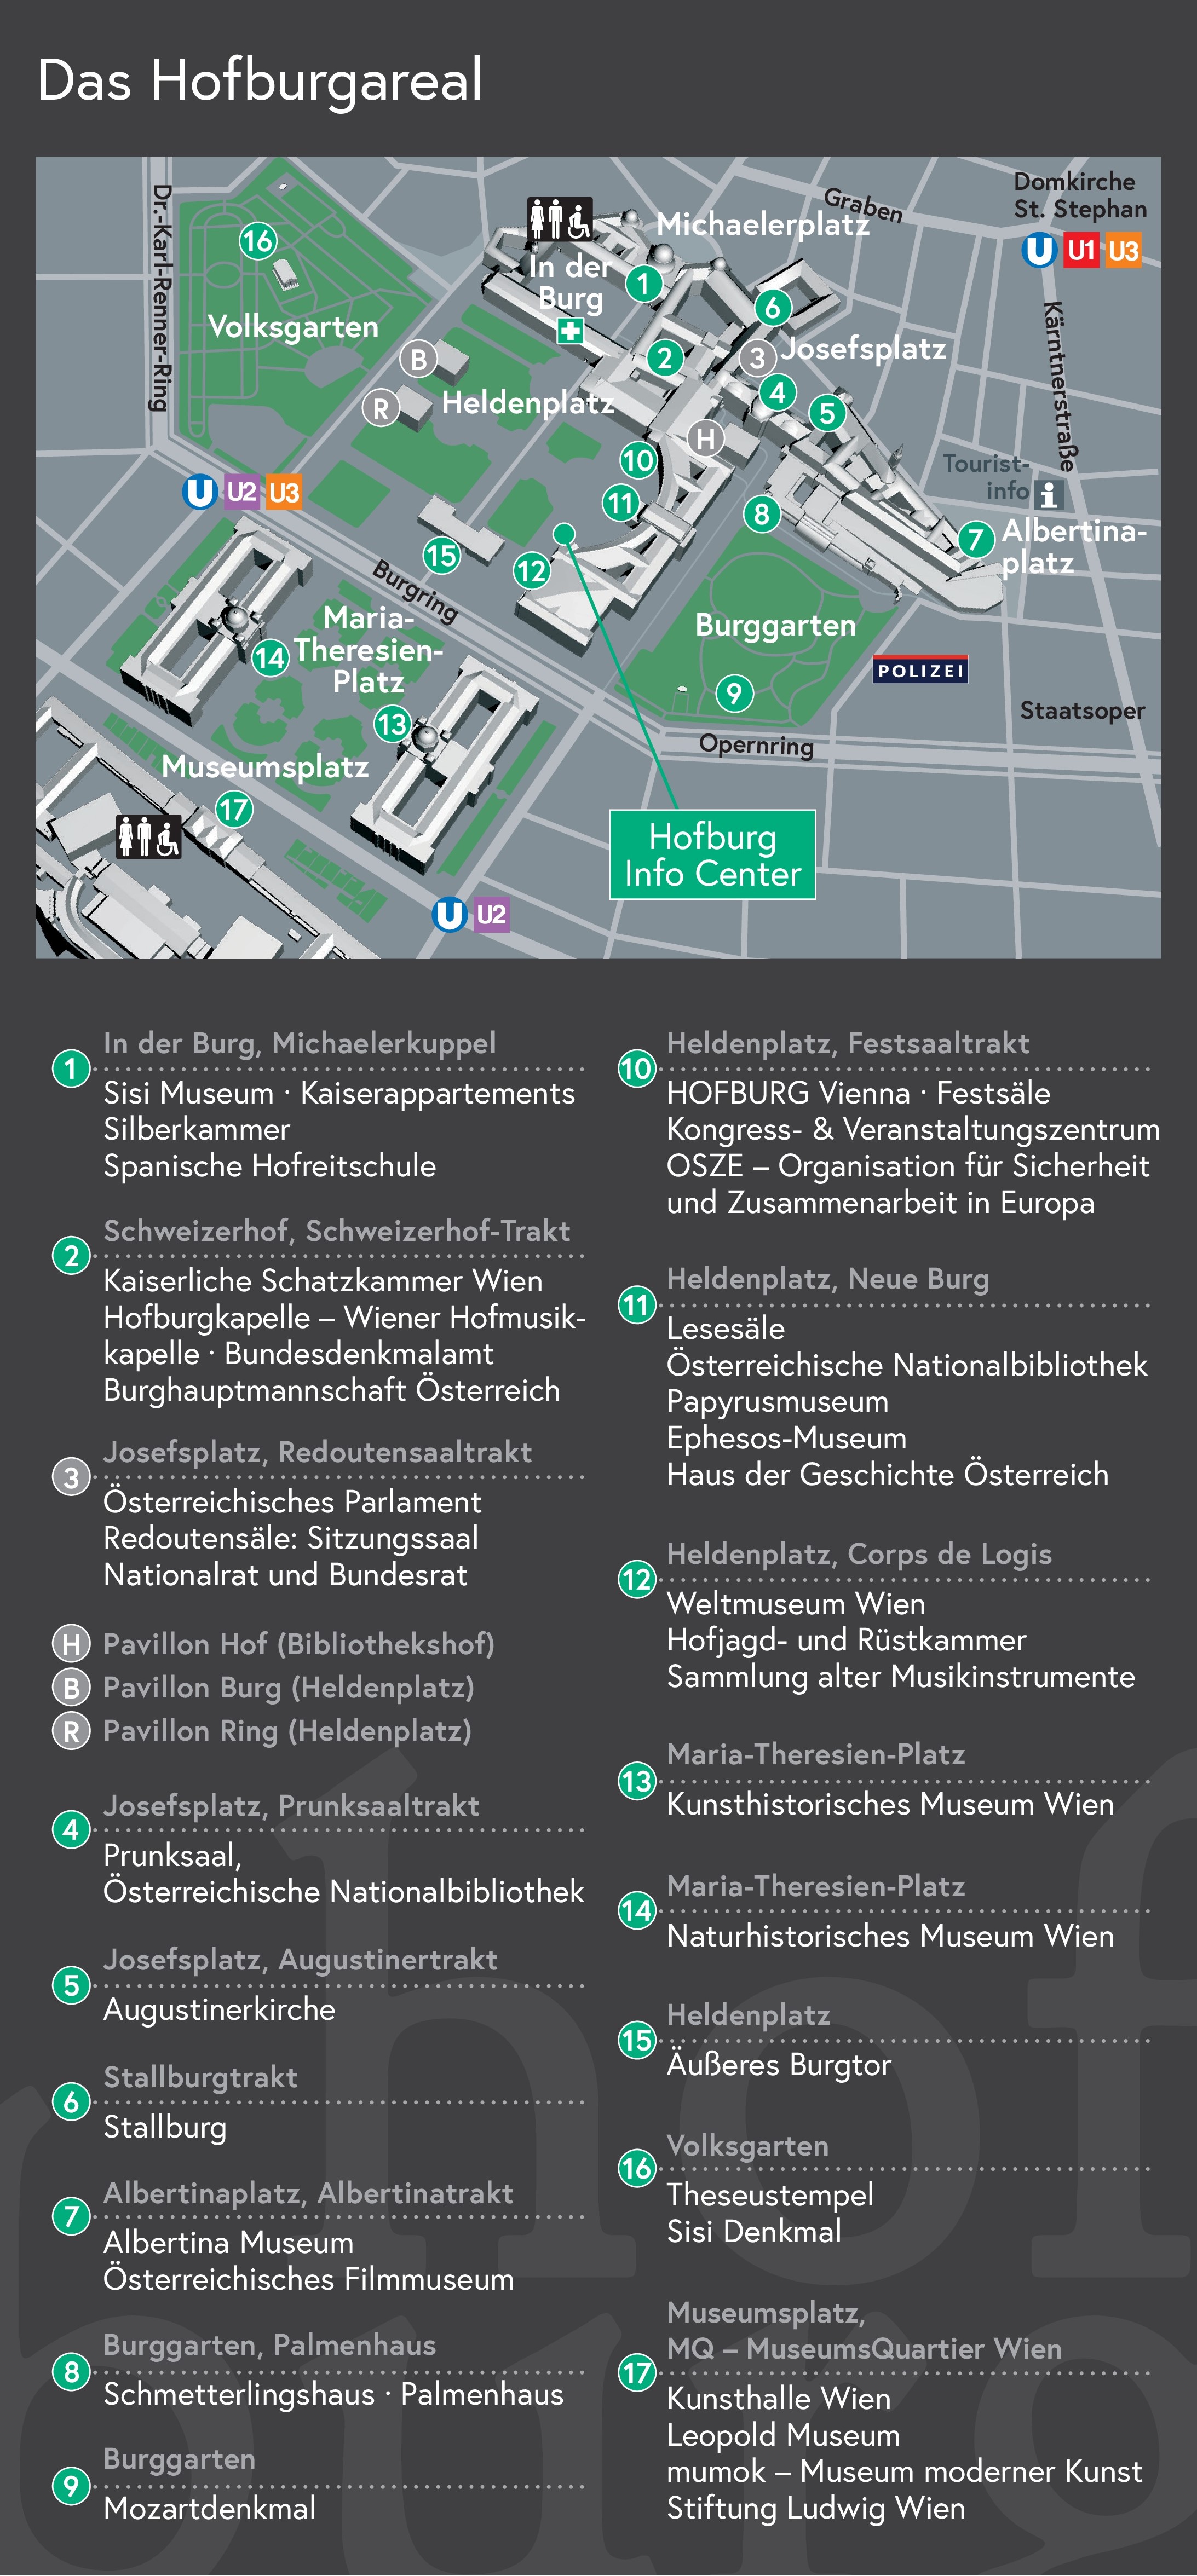 Das Hofburgareal als Plan mit Wegbeschreibung